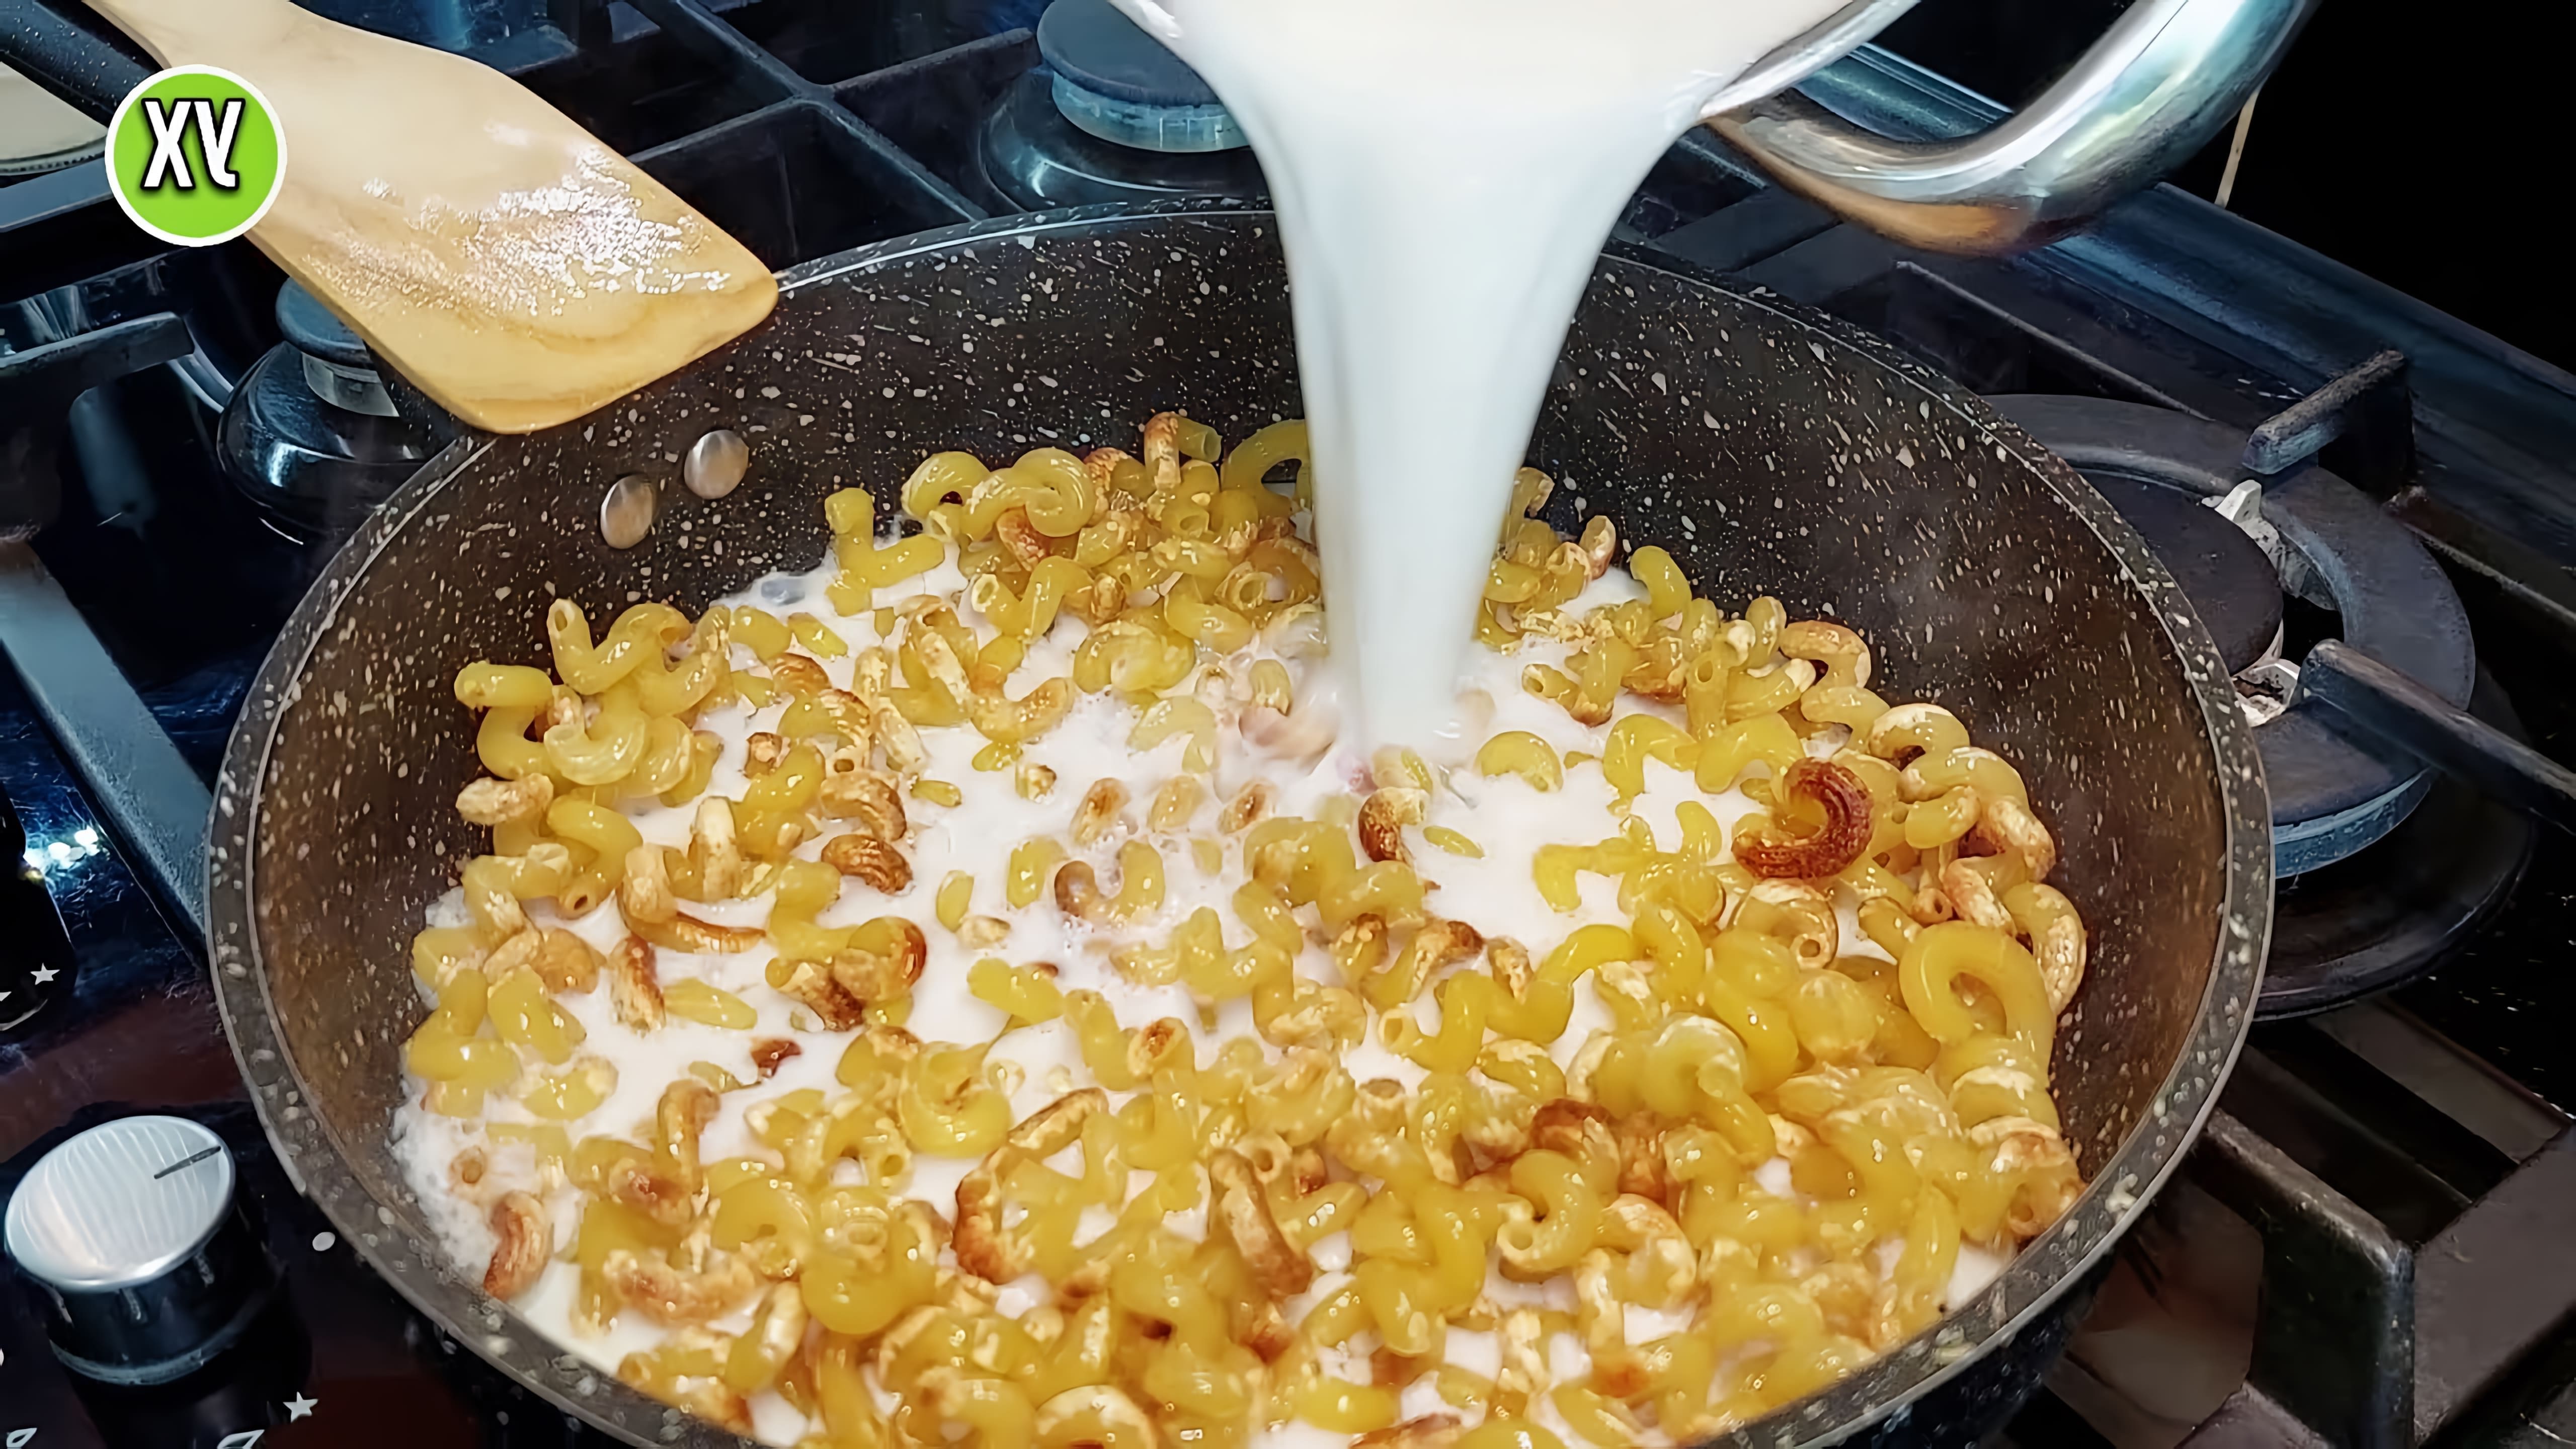 В этом видео демонстрируется рецепт приготовления жареных макарон с молоком